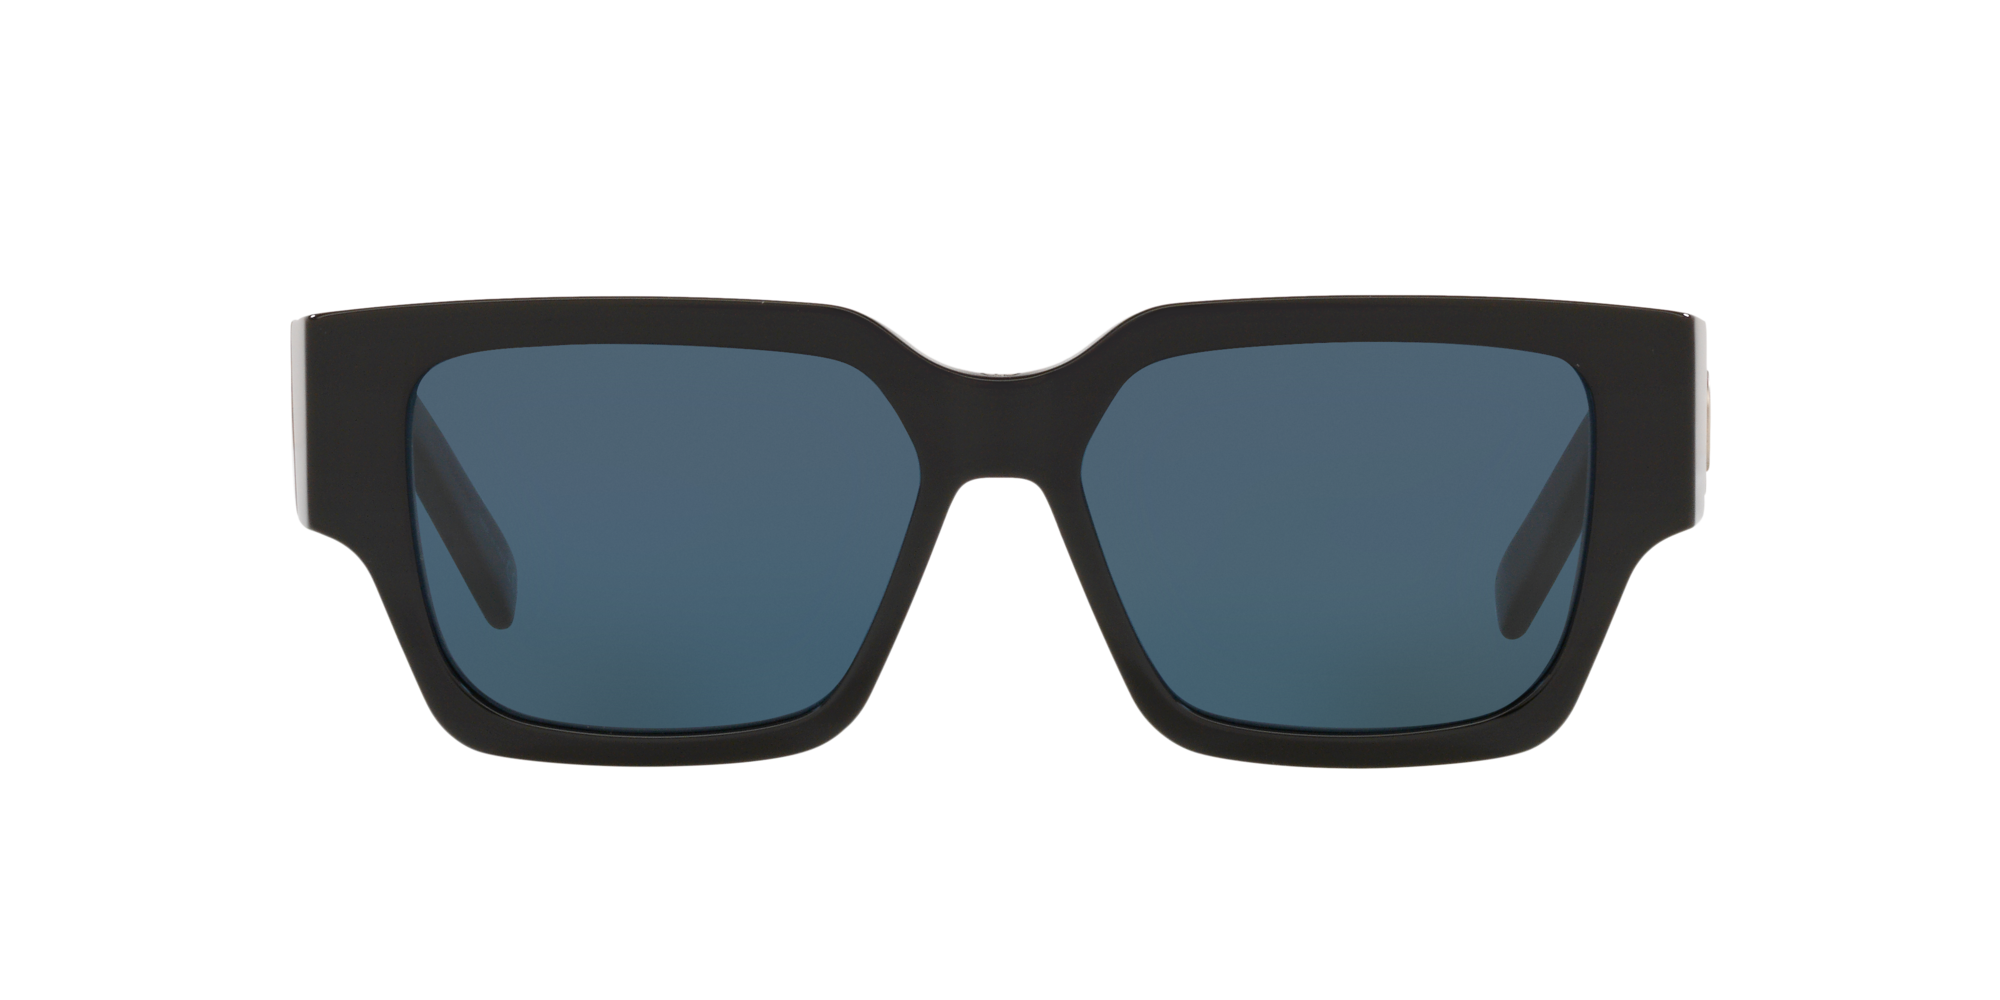 DIOR CD SU 55 Blue & Black Sunglasses | Sunglass Hut USA